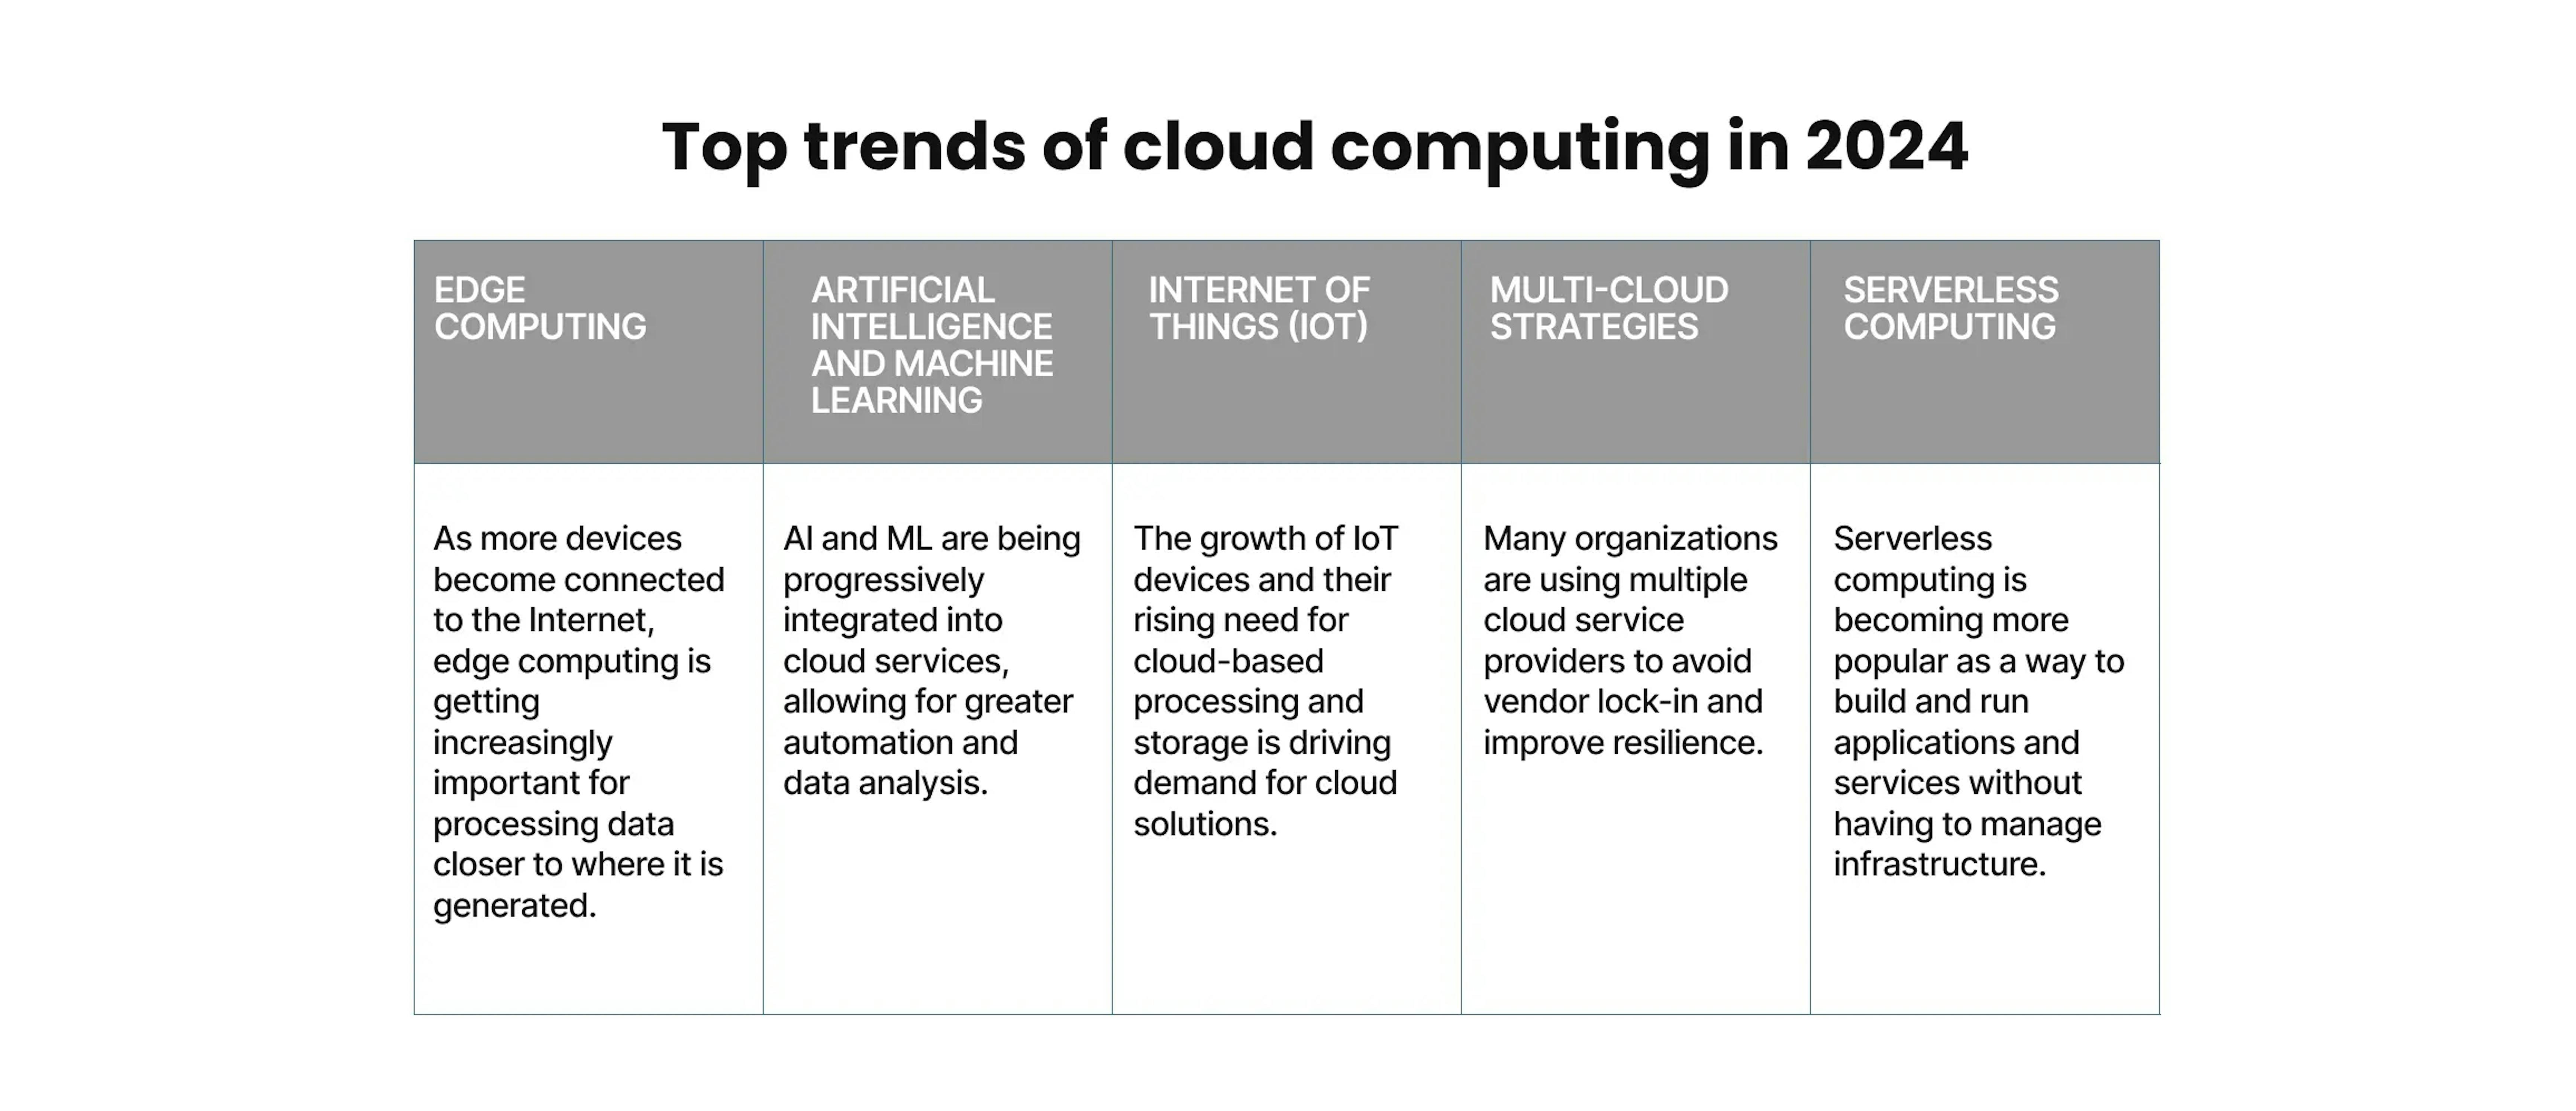 Top trends of cloud computing in 2024